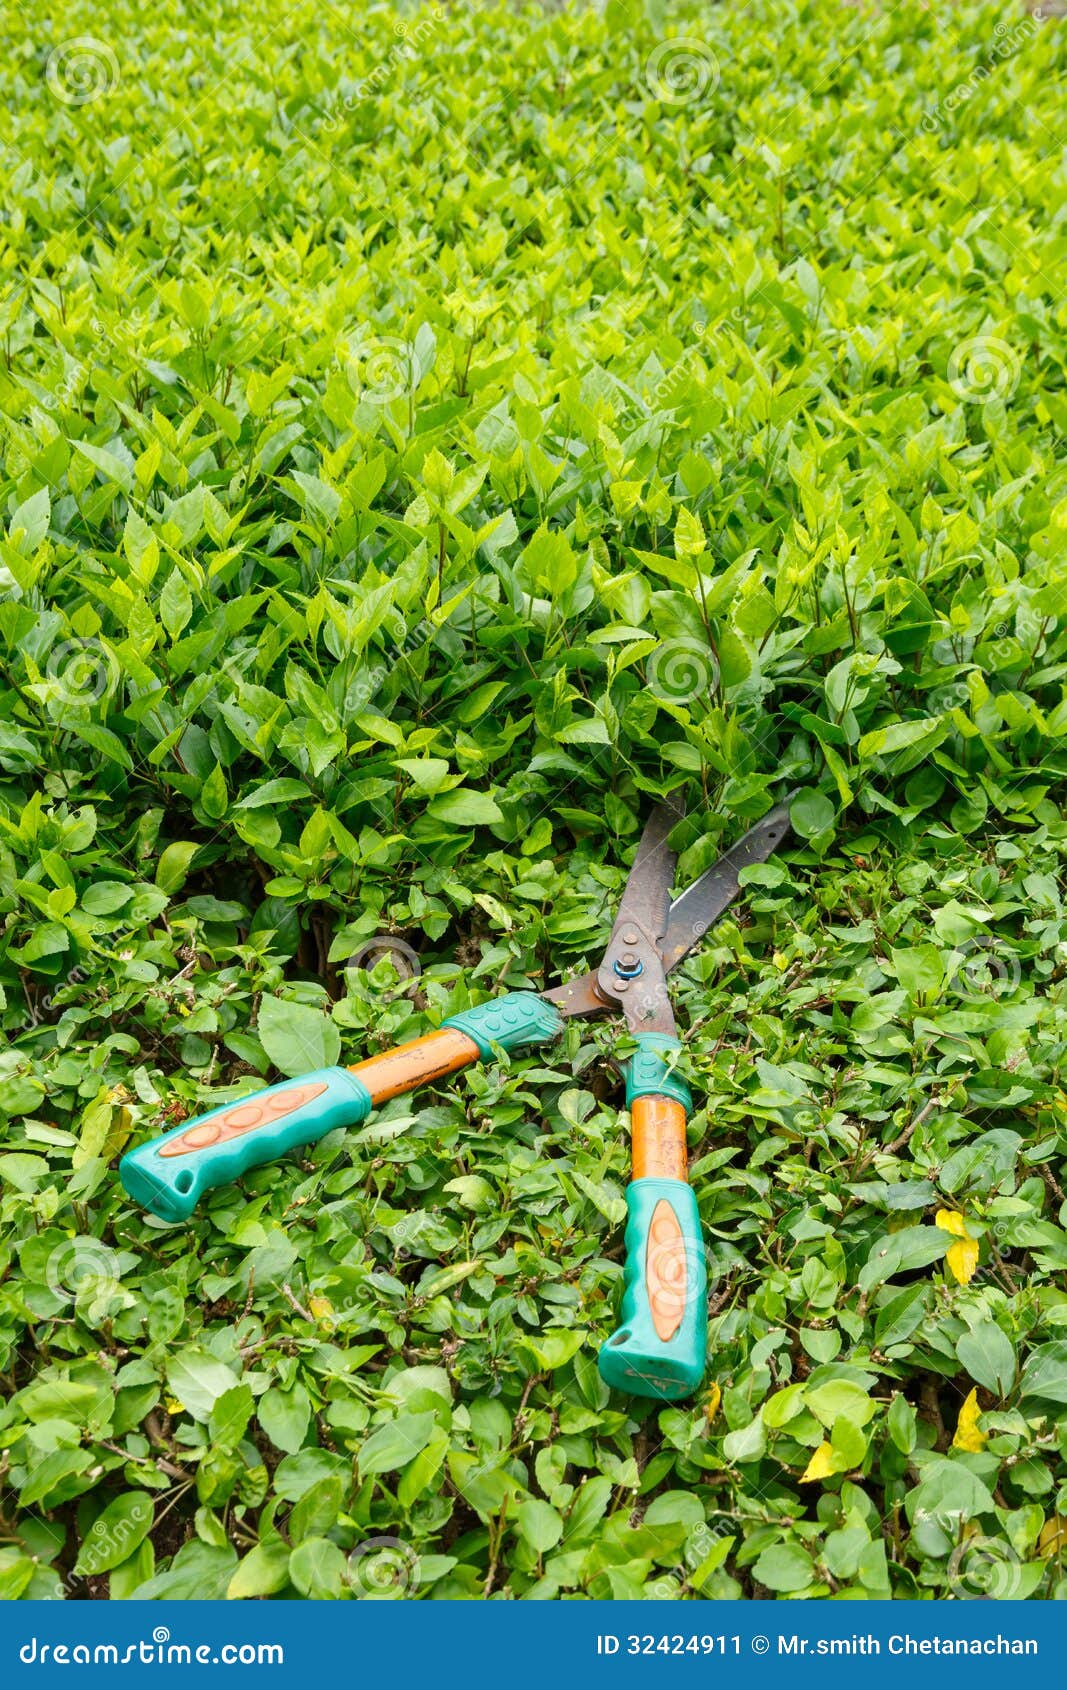 trimming shrubs scissors